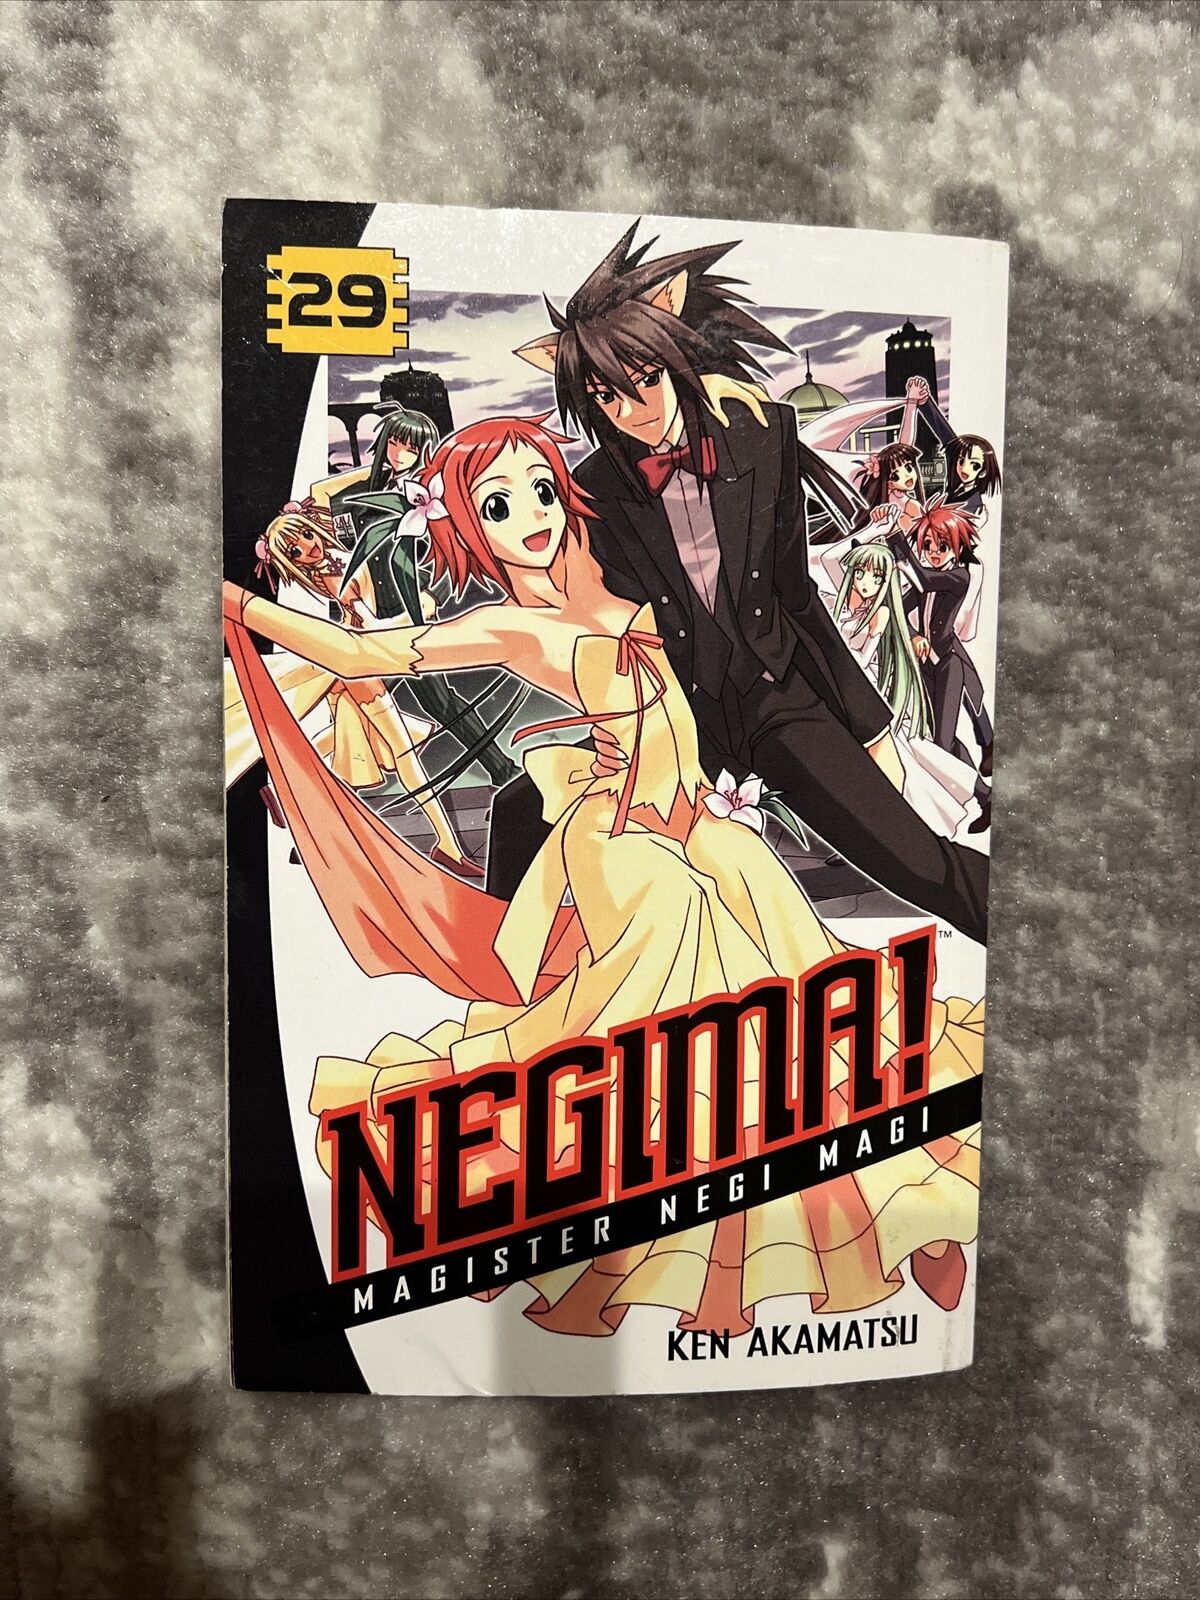 Negima Magister Negi Magi Vol. 29 - 2011 Manga Kodansha First Printing English